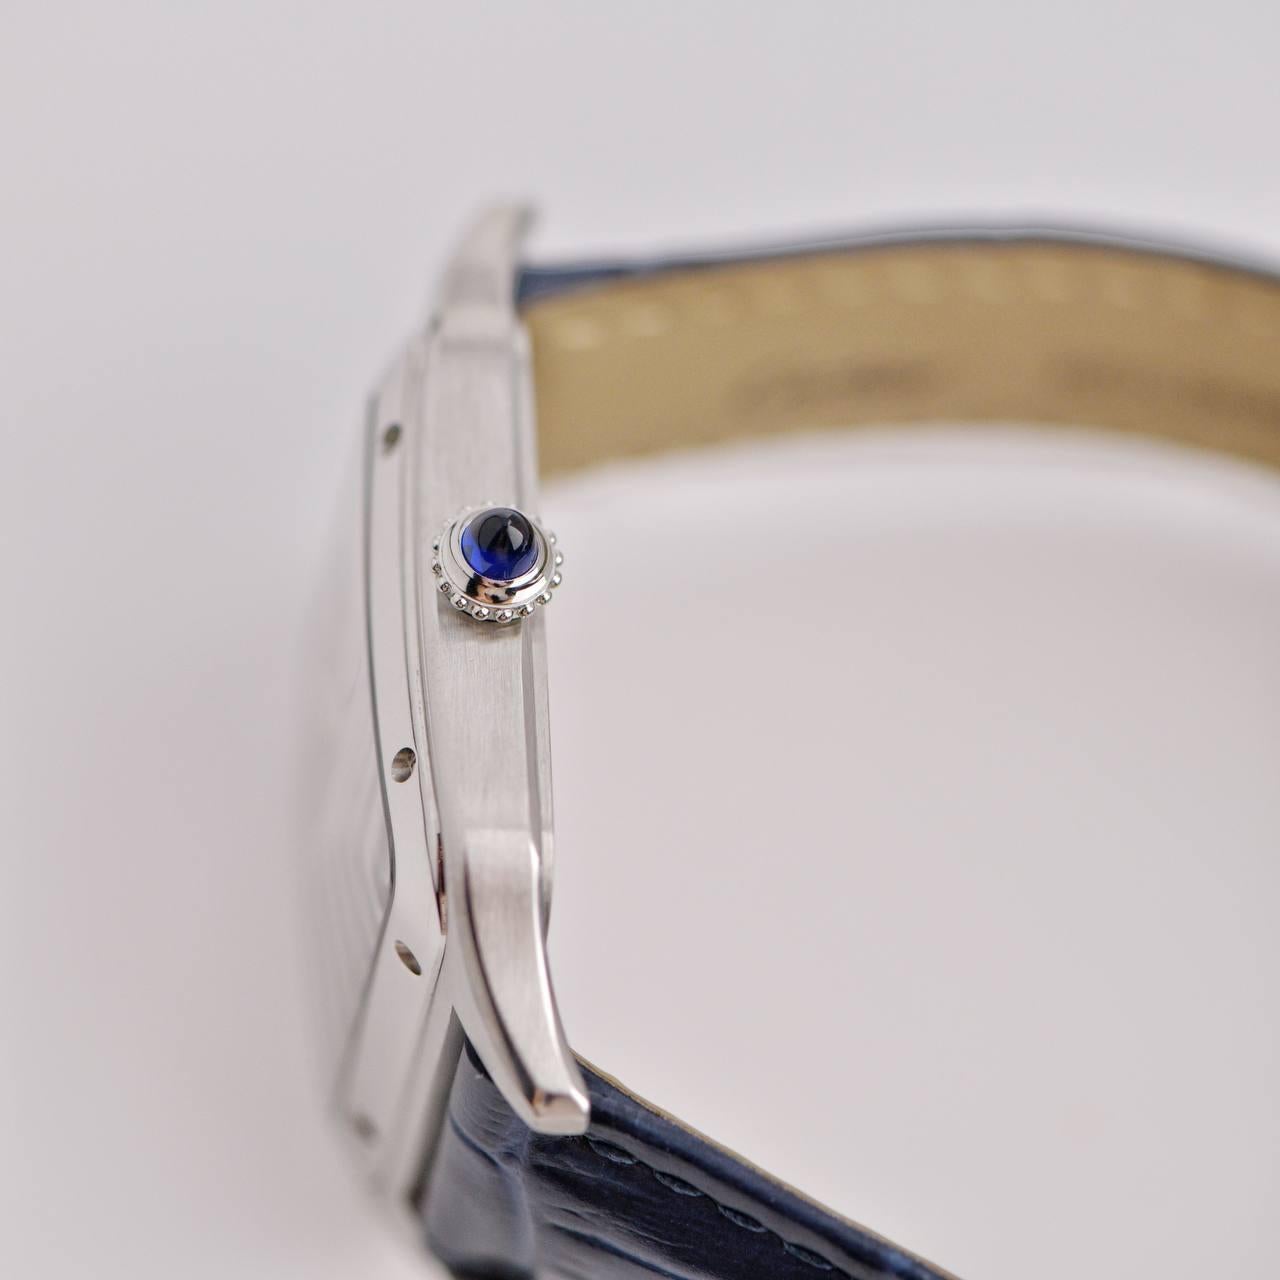 charles dumont paris quartz water resistant watch